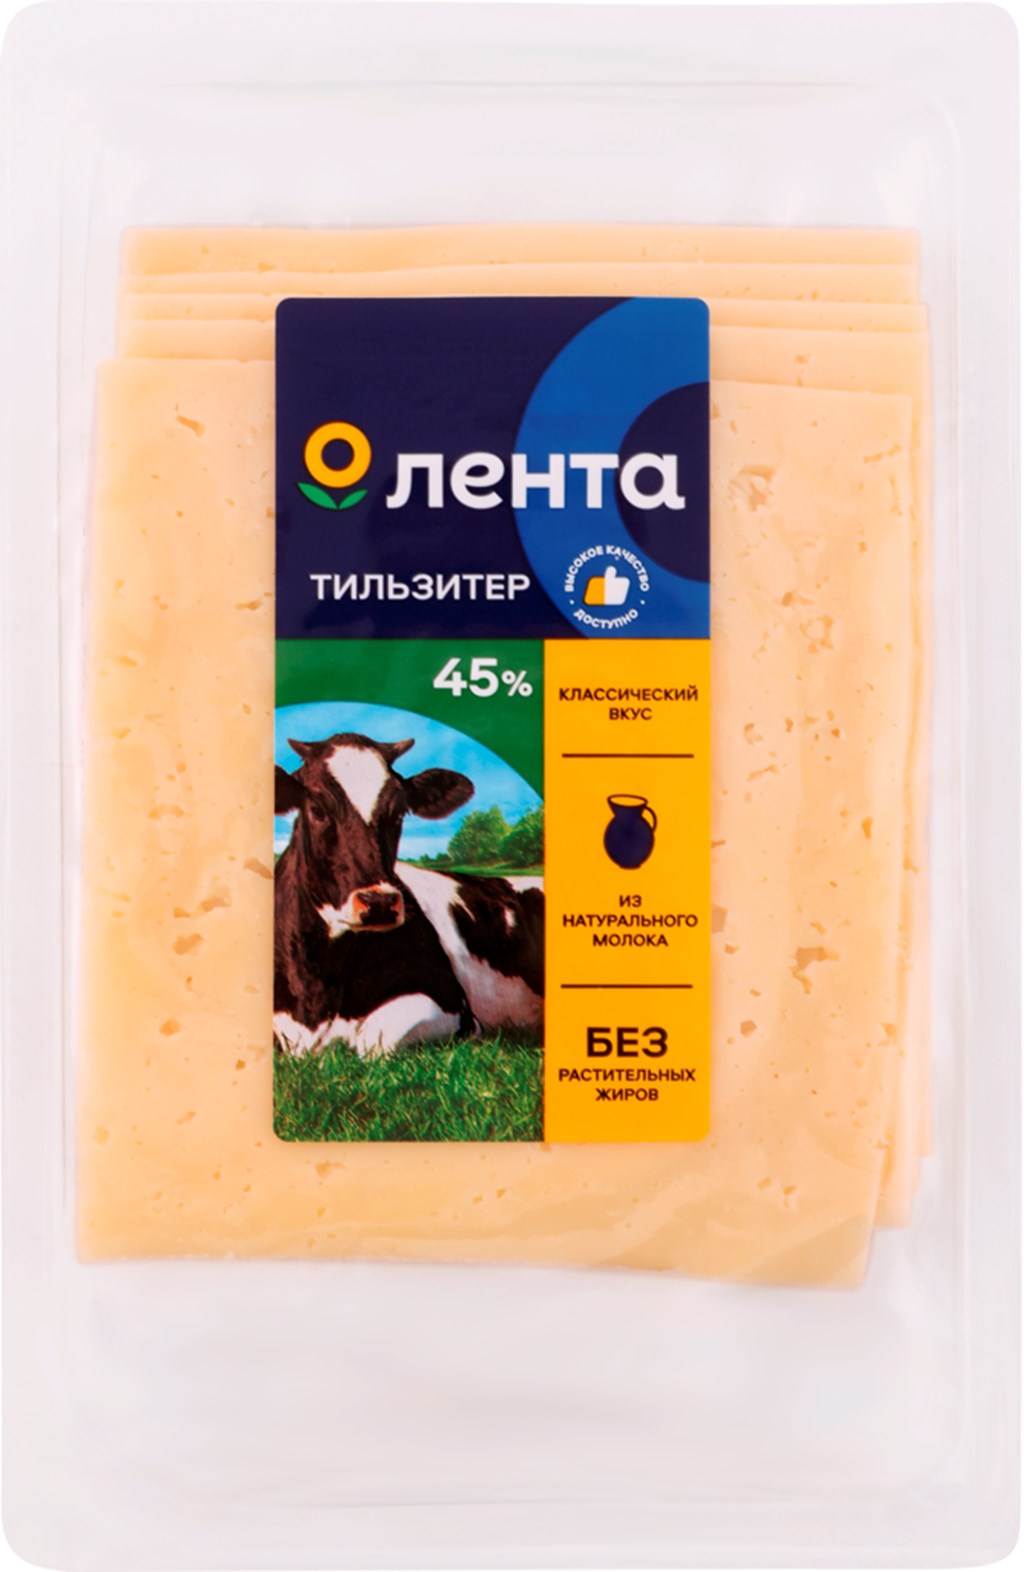 Плавленый сыр Лента Тильзитер 45% 150 г